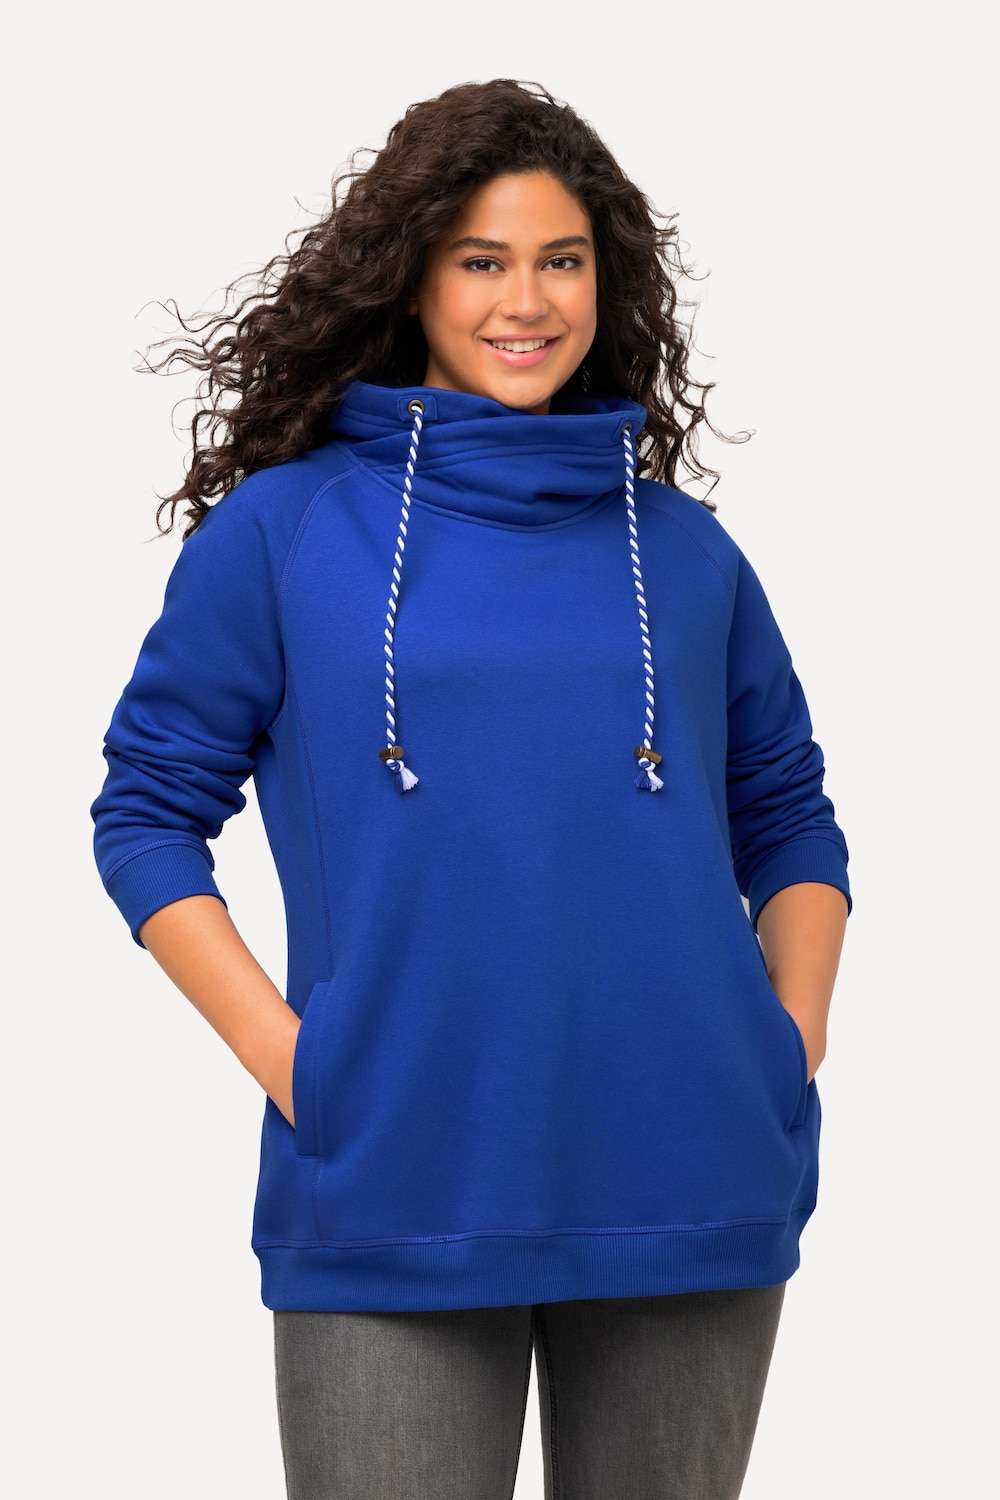 Grote Maten sweatshirt, Dames, blauw, Maat: 66/68, Katoen/Polyester, Ulla Popken